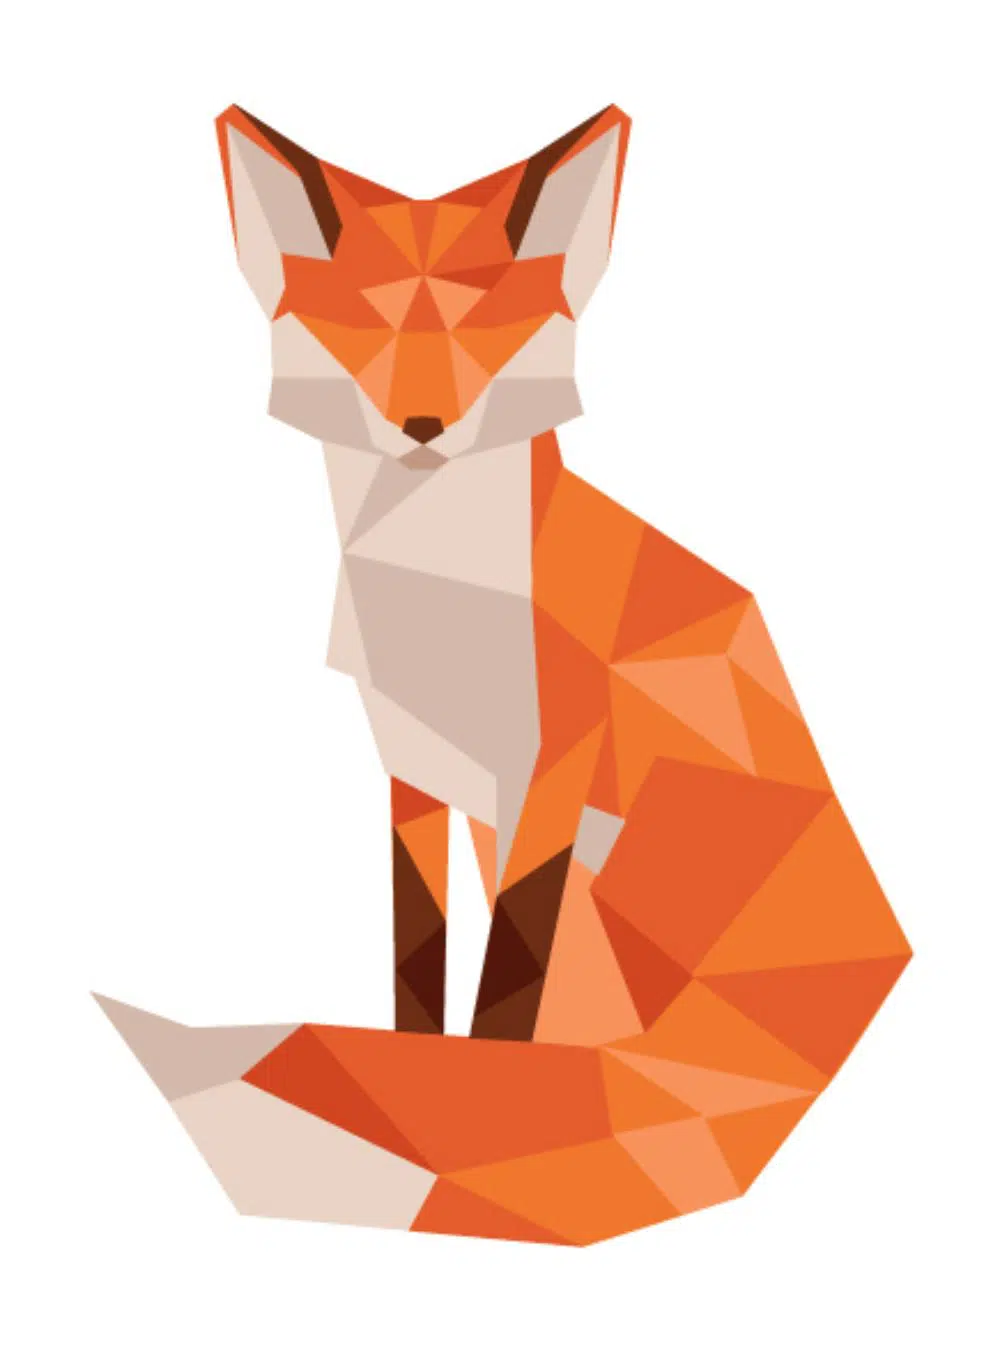 Low Poly Fox by Jennifer Tamochunas